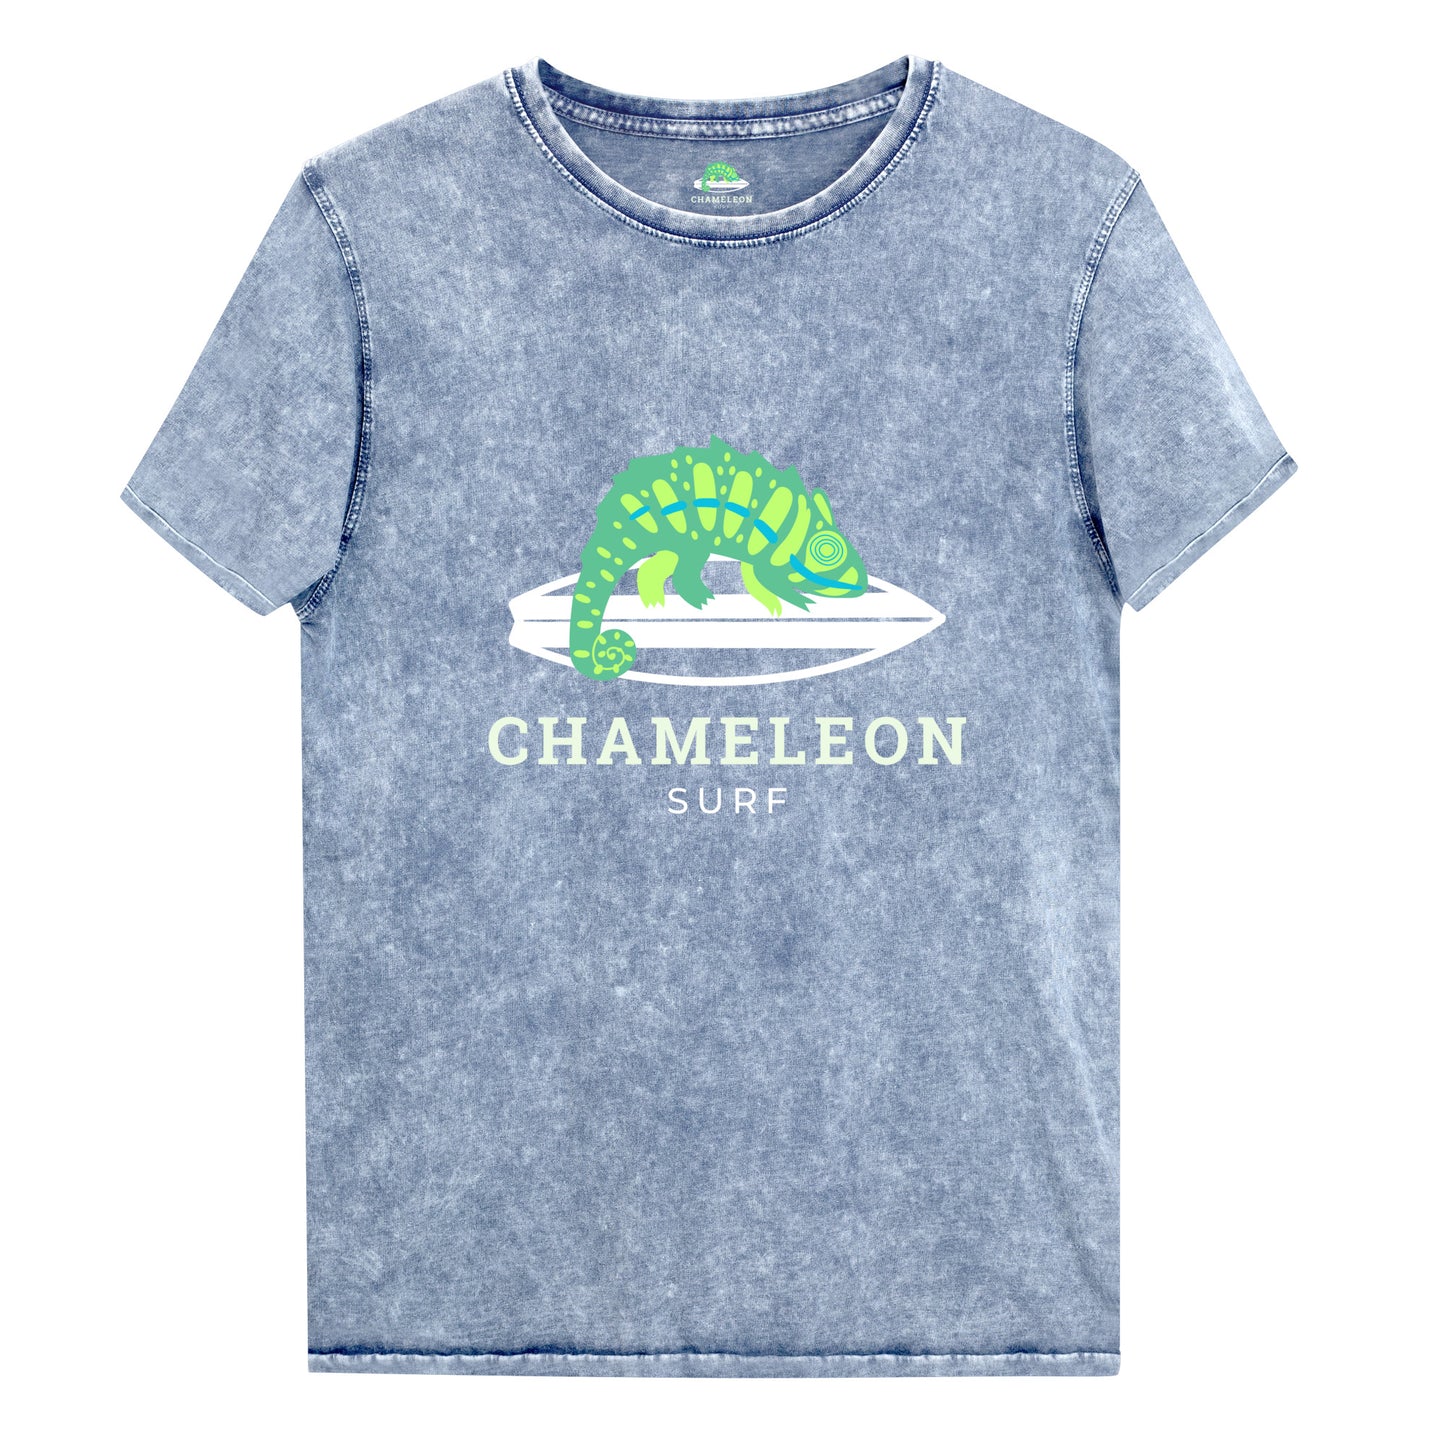 Green Chameleon Surf Men's Acid Wash Denim T-Shirt